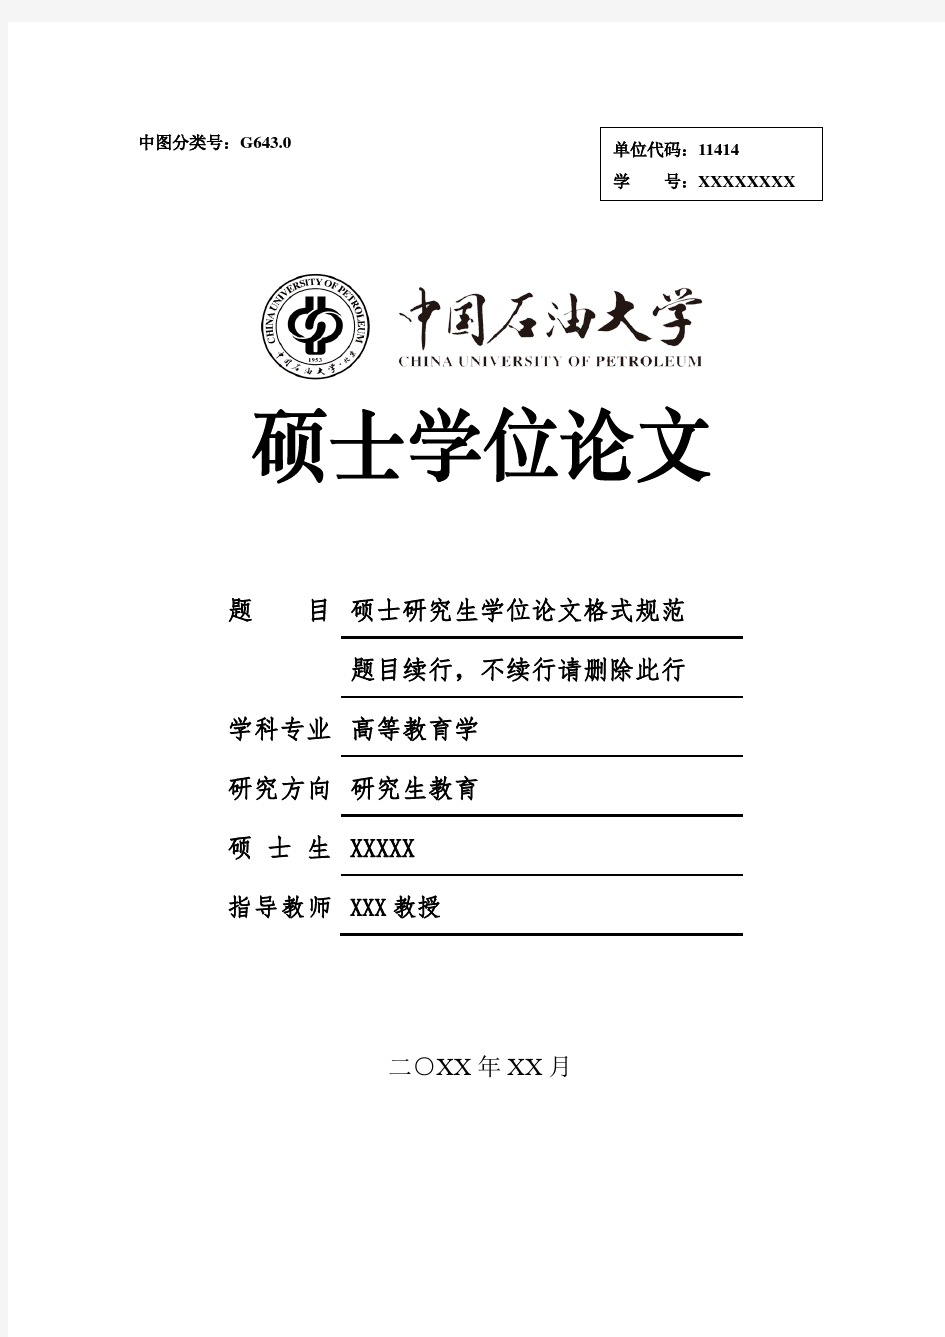 中国石油大学(北京)学术硕士学位论文格式范文模板